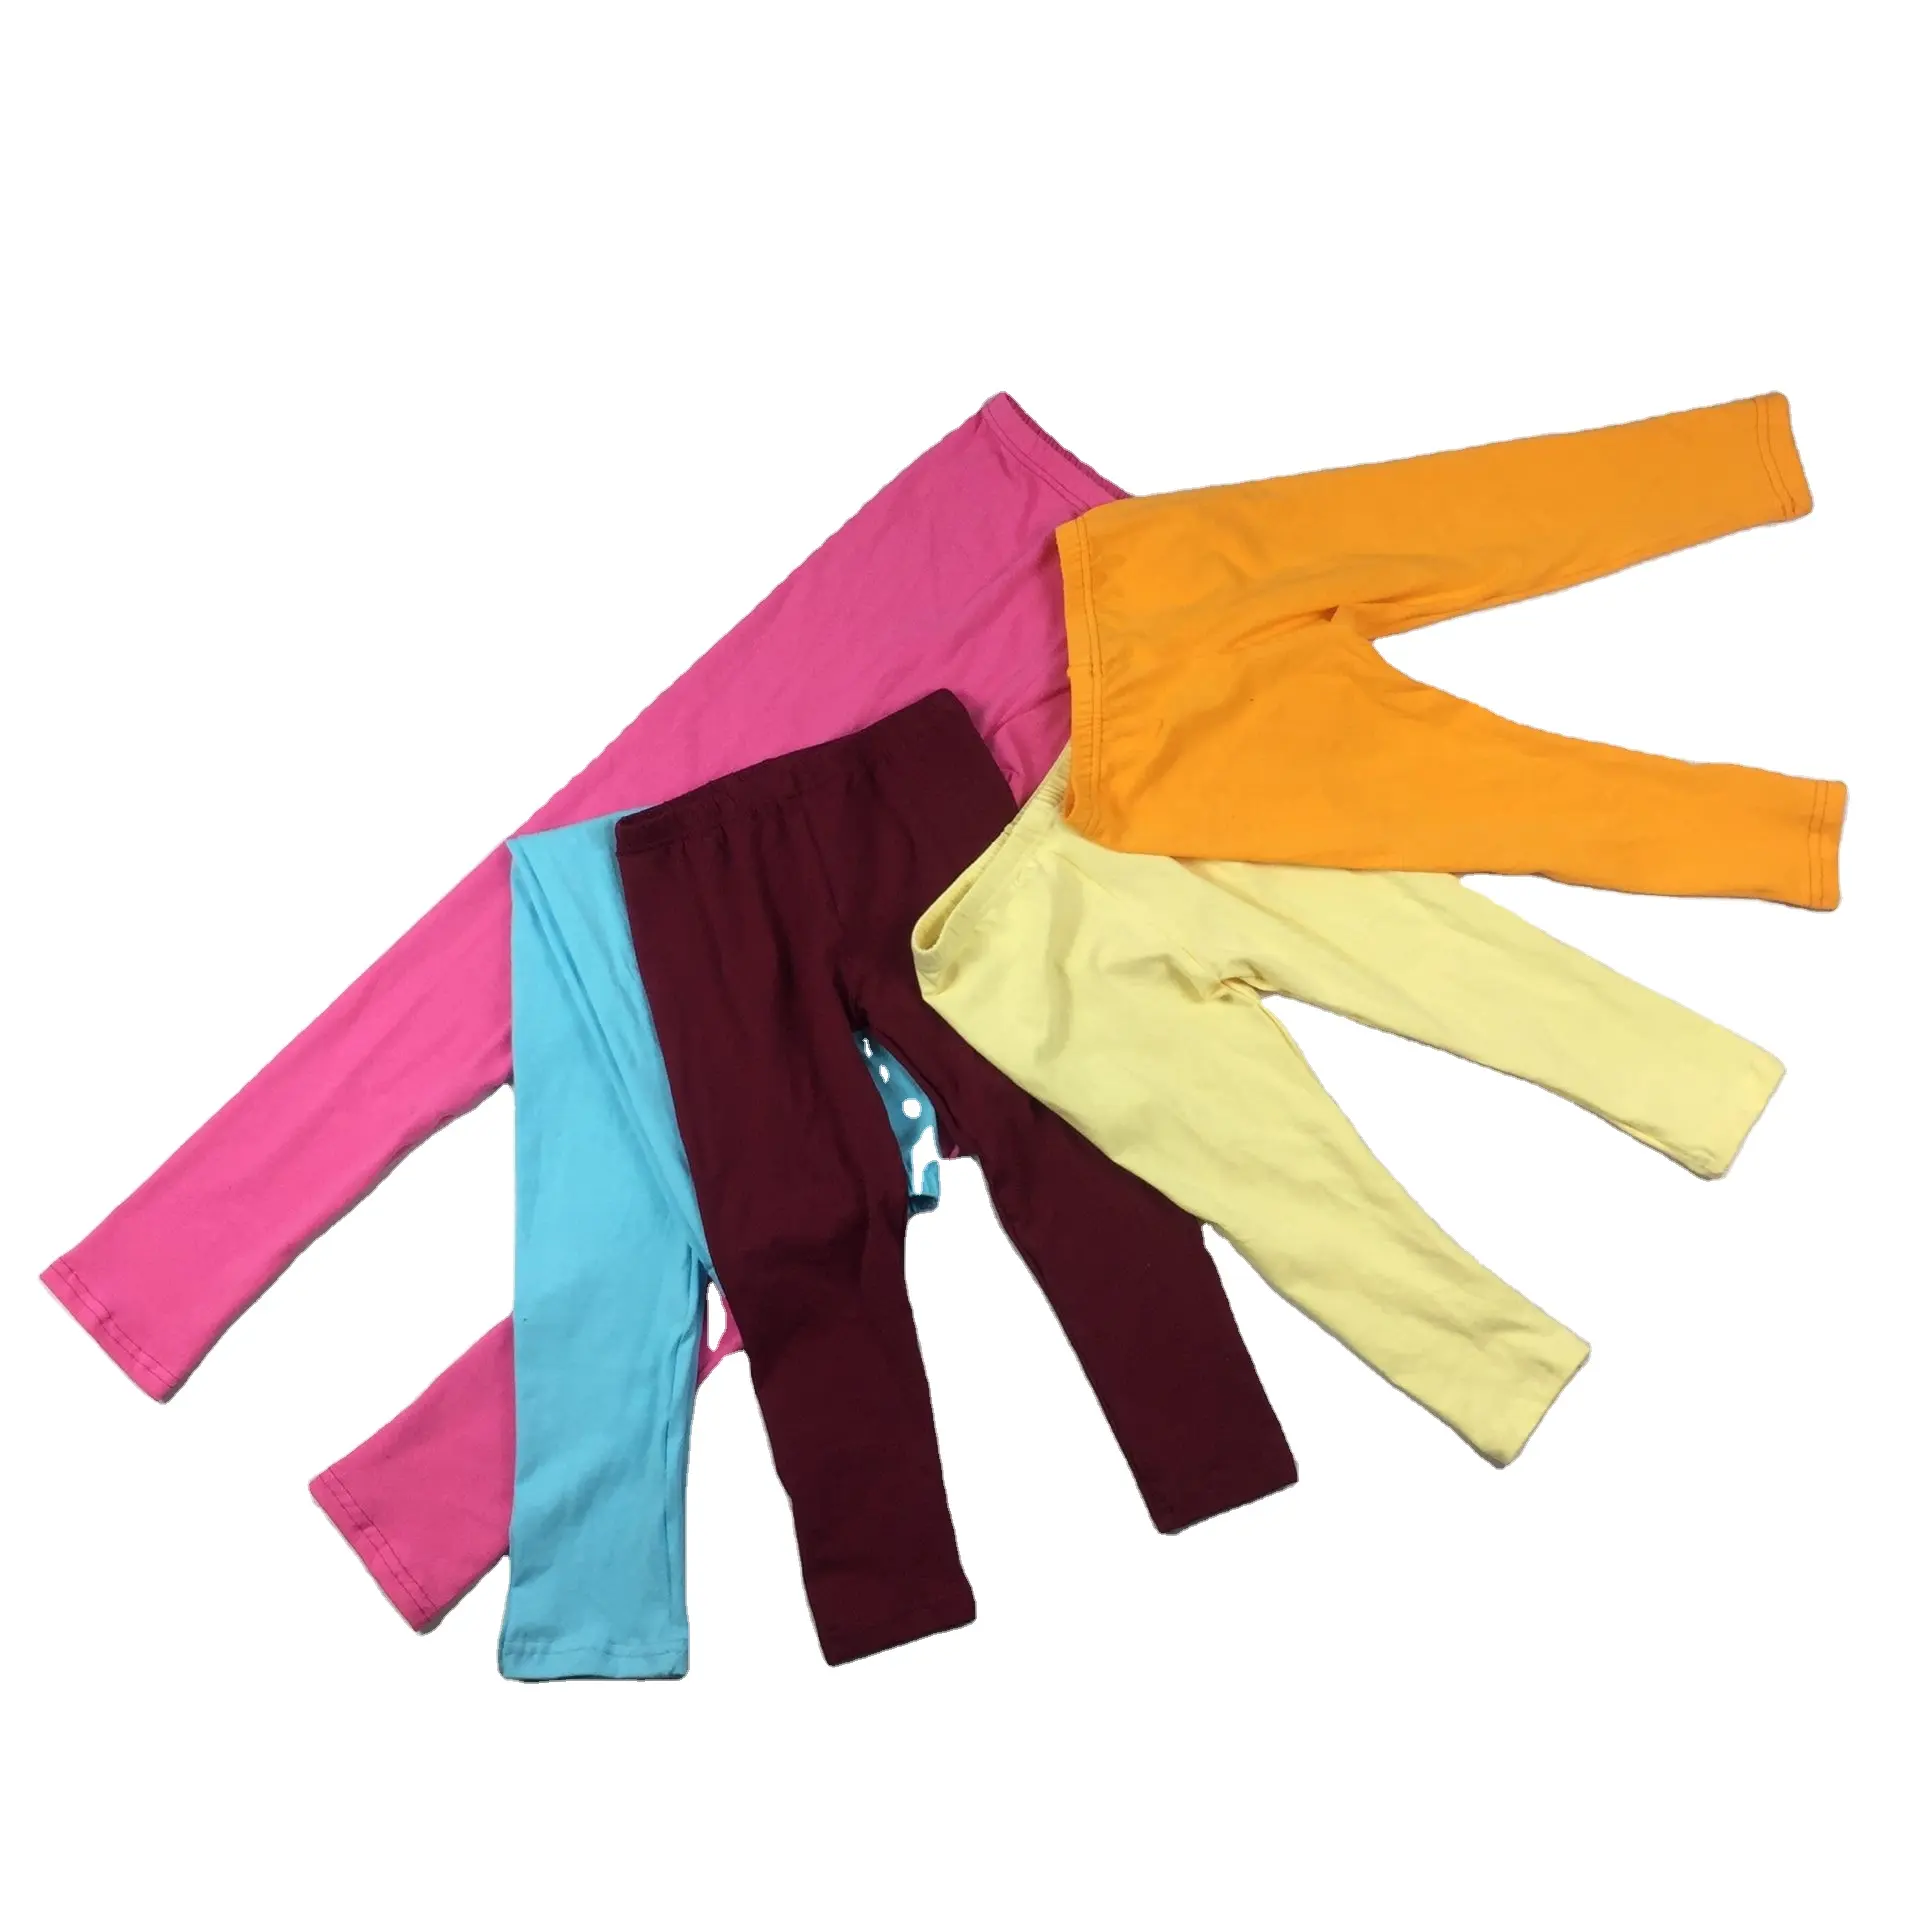 Celana Katun Polos Bayi Balita Bayi Legging Musim Gugur Pakaian Anak-anak 40 Warna Grosir 2021 Celana Legging Icing Anak Perempuan Kecil